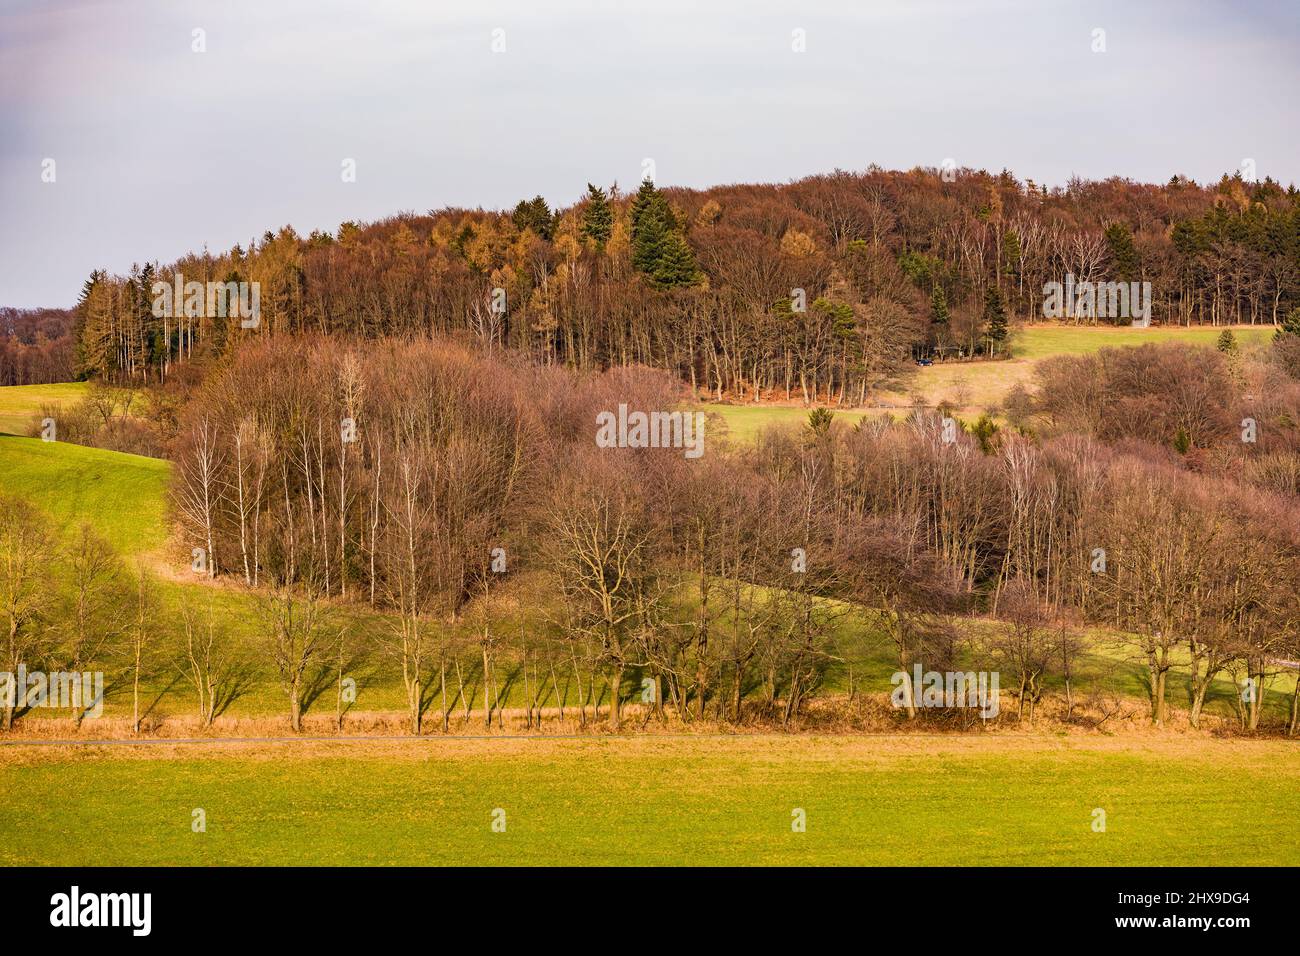 Paesaggio rurale con campi, alberi, boschi e cespugli nel sole d'inverno Foto Stock